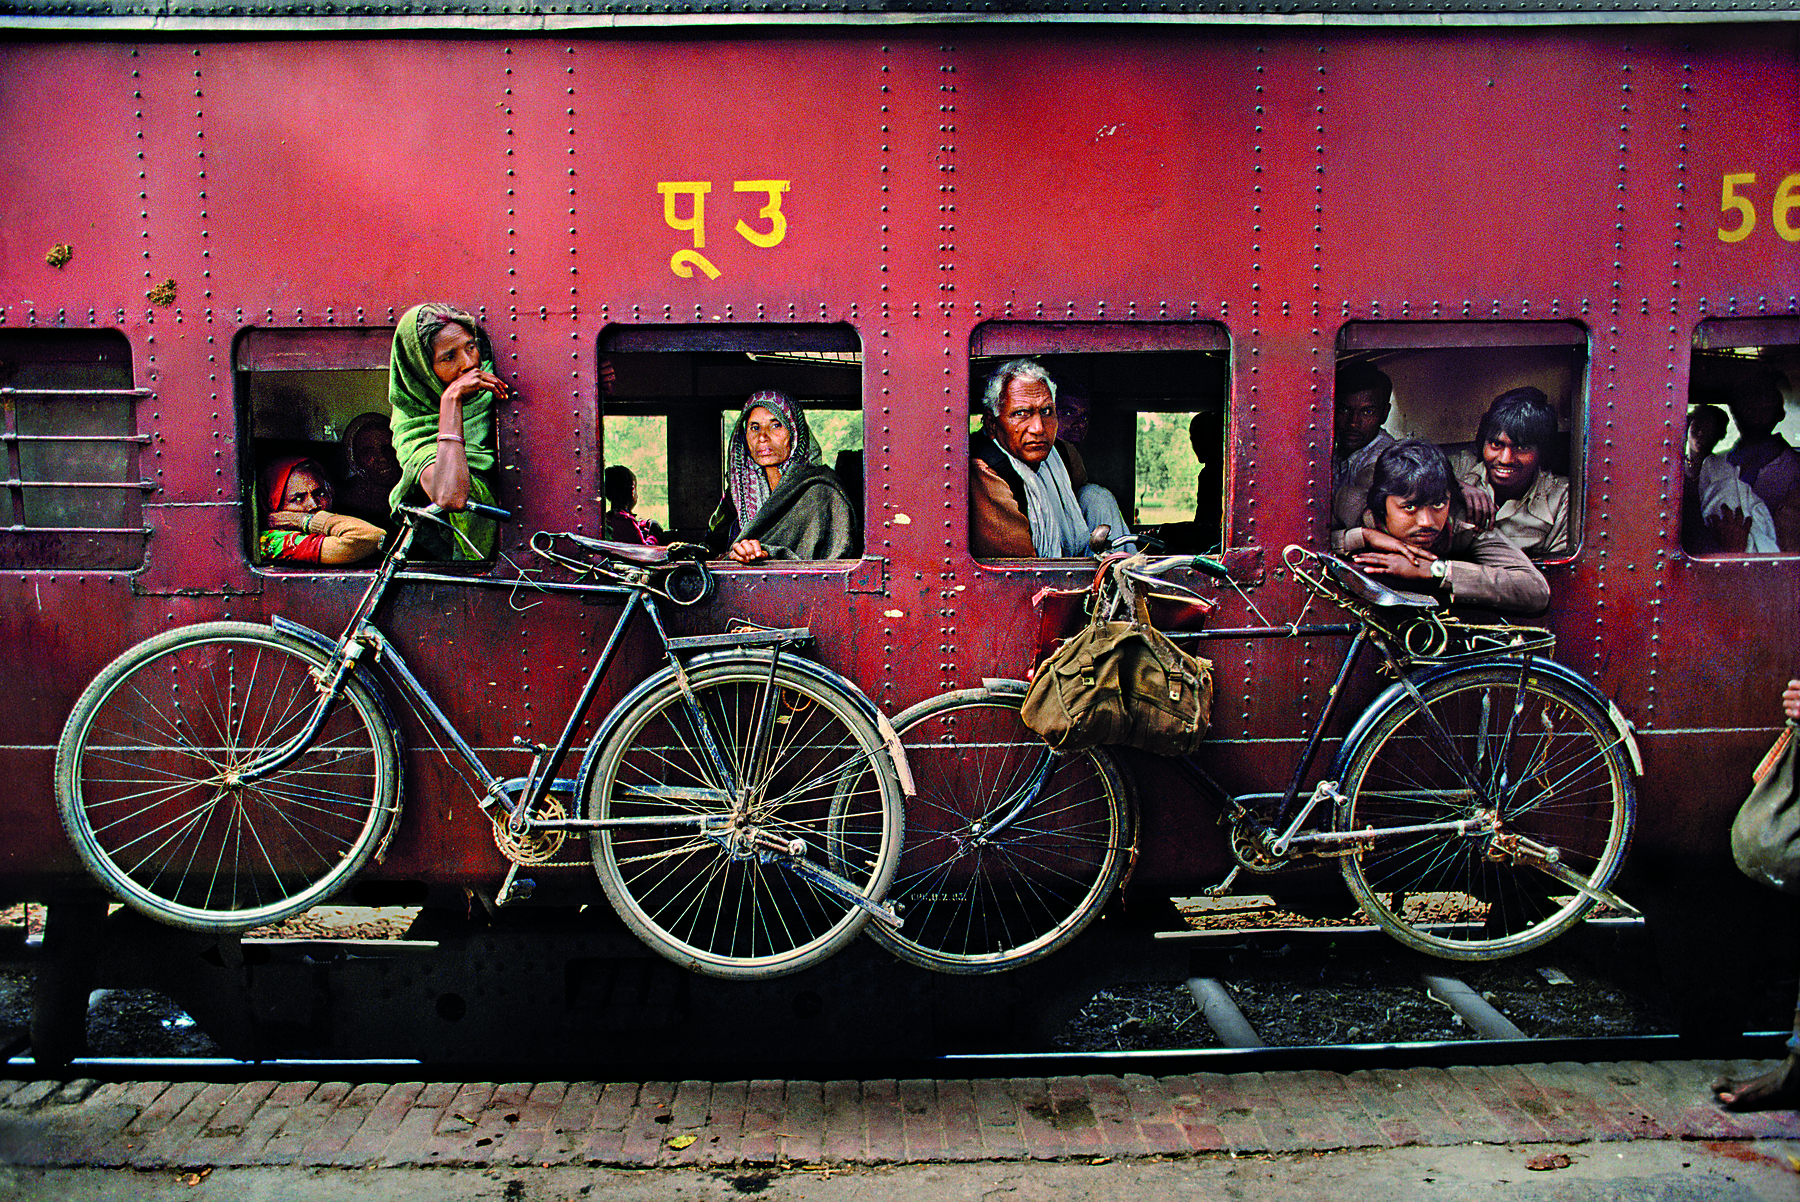 Fotografia. Pessoas dentro de um trem vermelho com janelas abertas. Do lado de fora, duas bicicletas estão penduradas. Algumas pessoas se projetam levemente para fora das janelas.